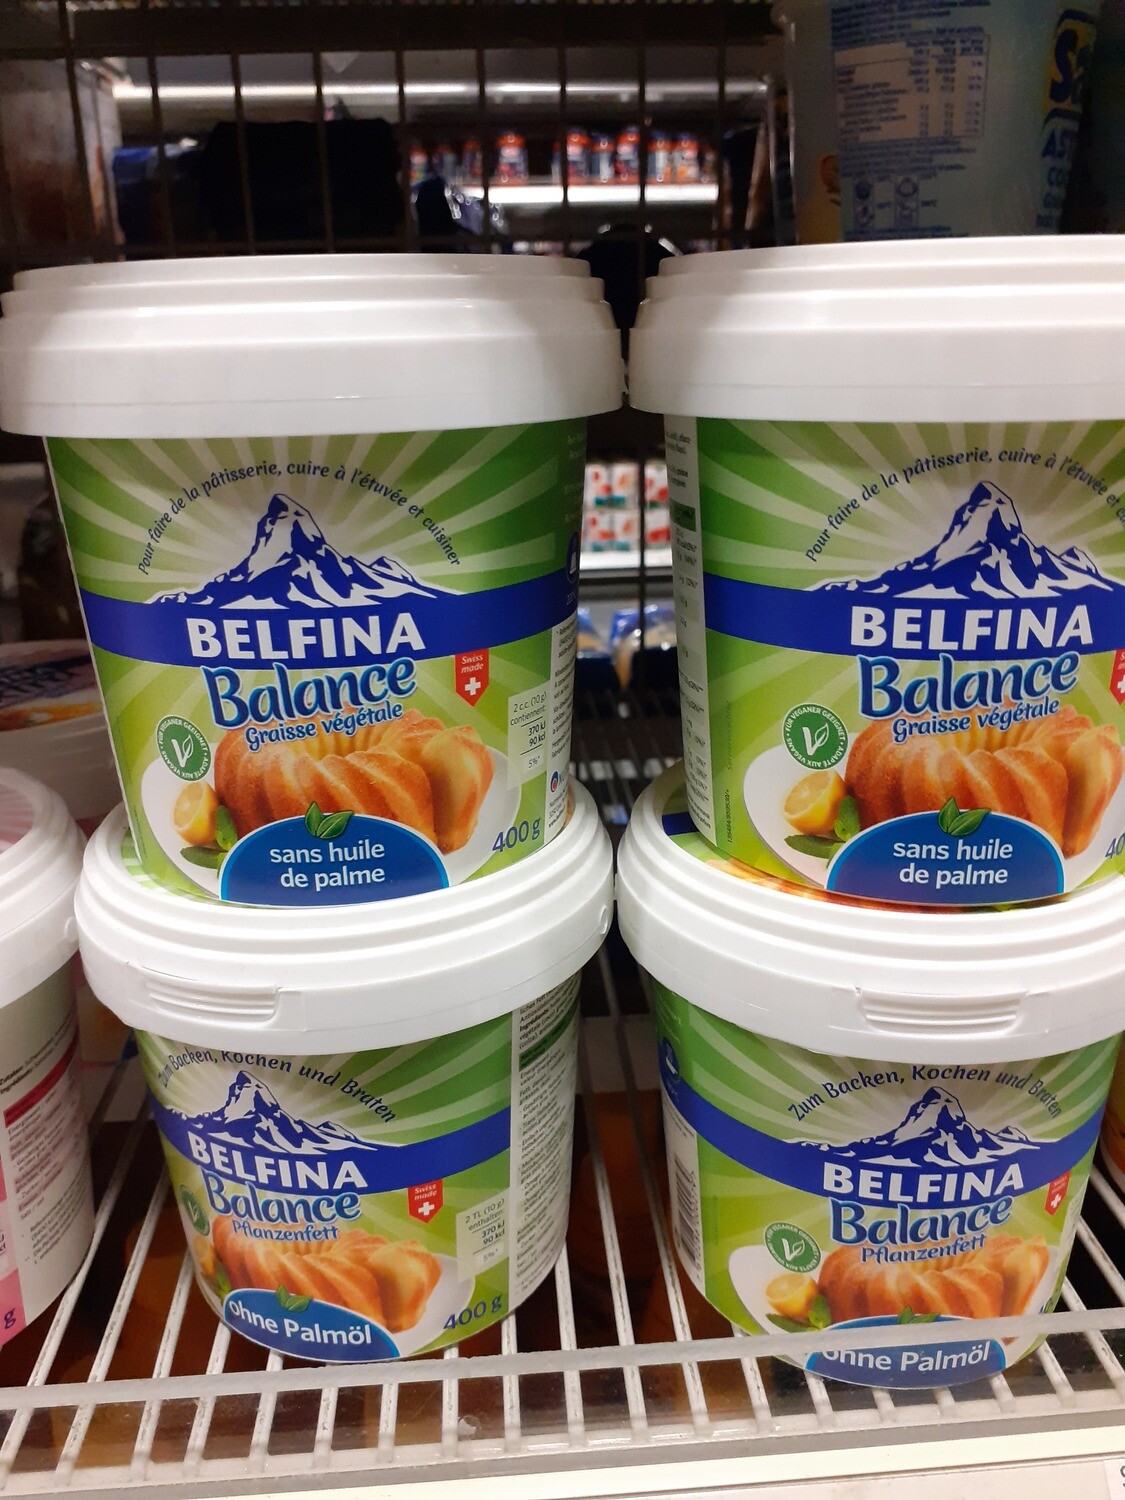 Belfina Balance graisse vegetale